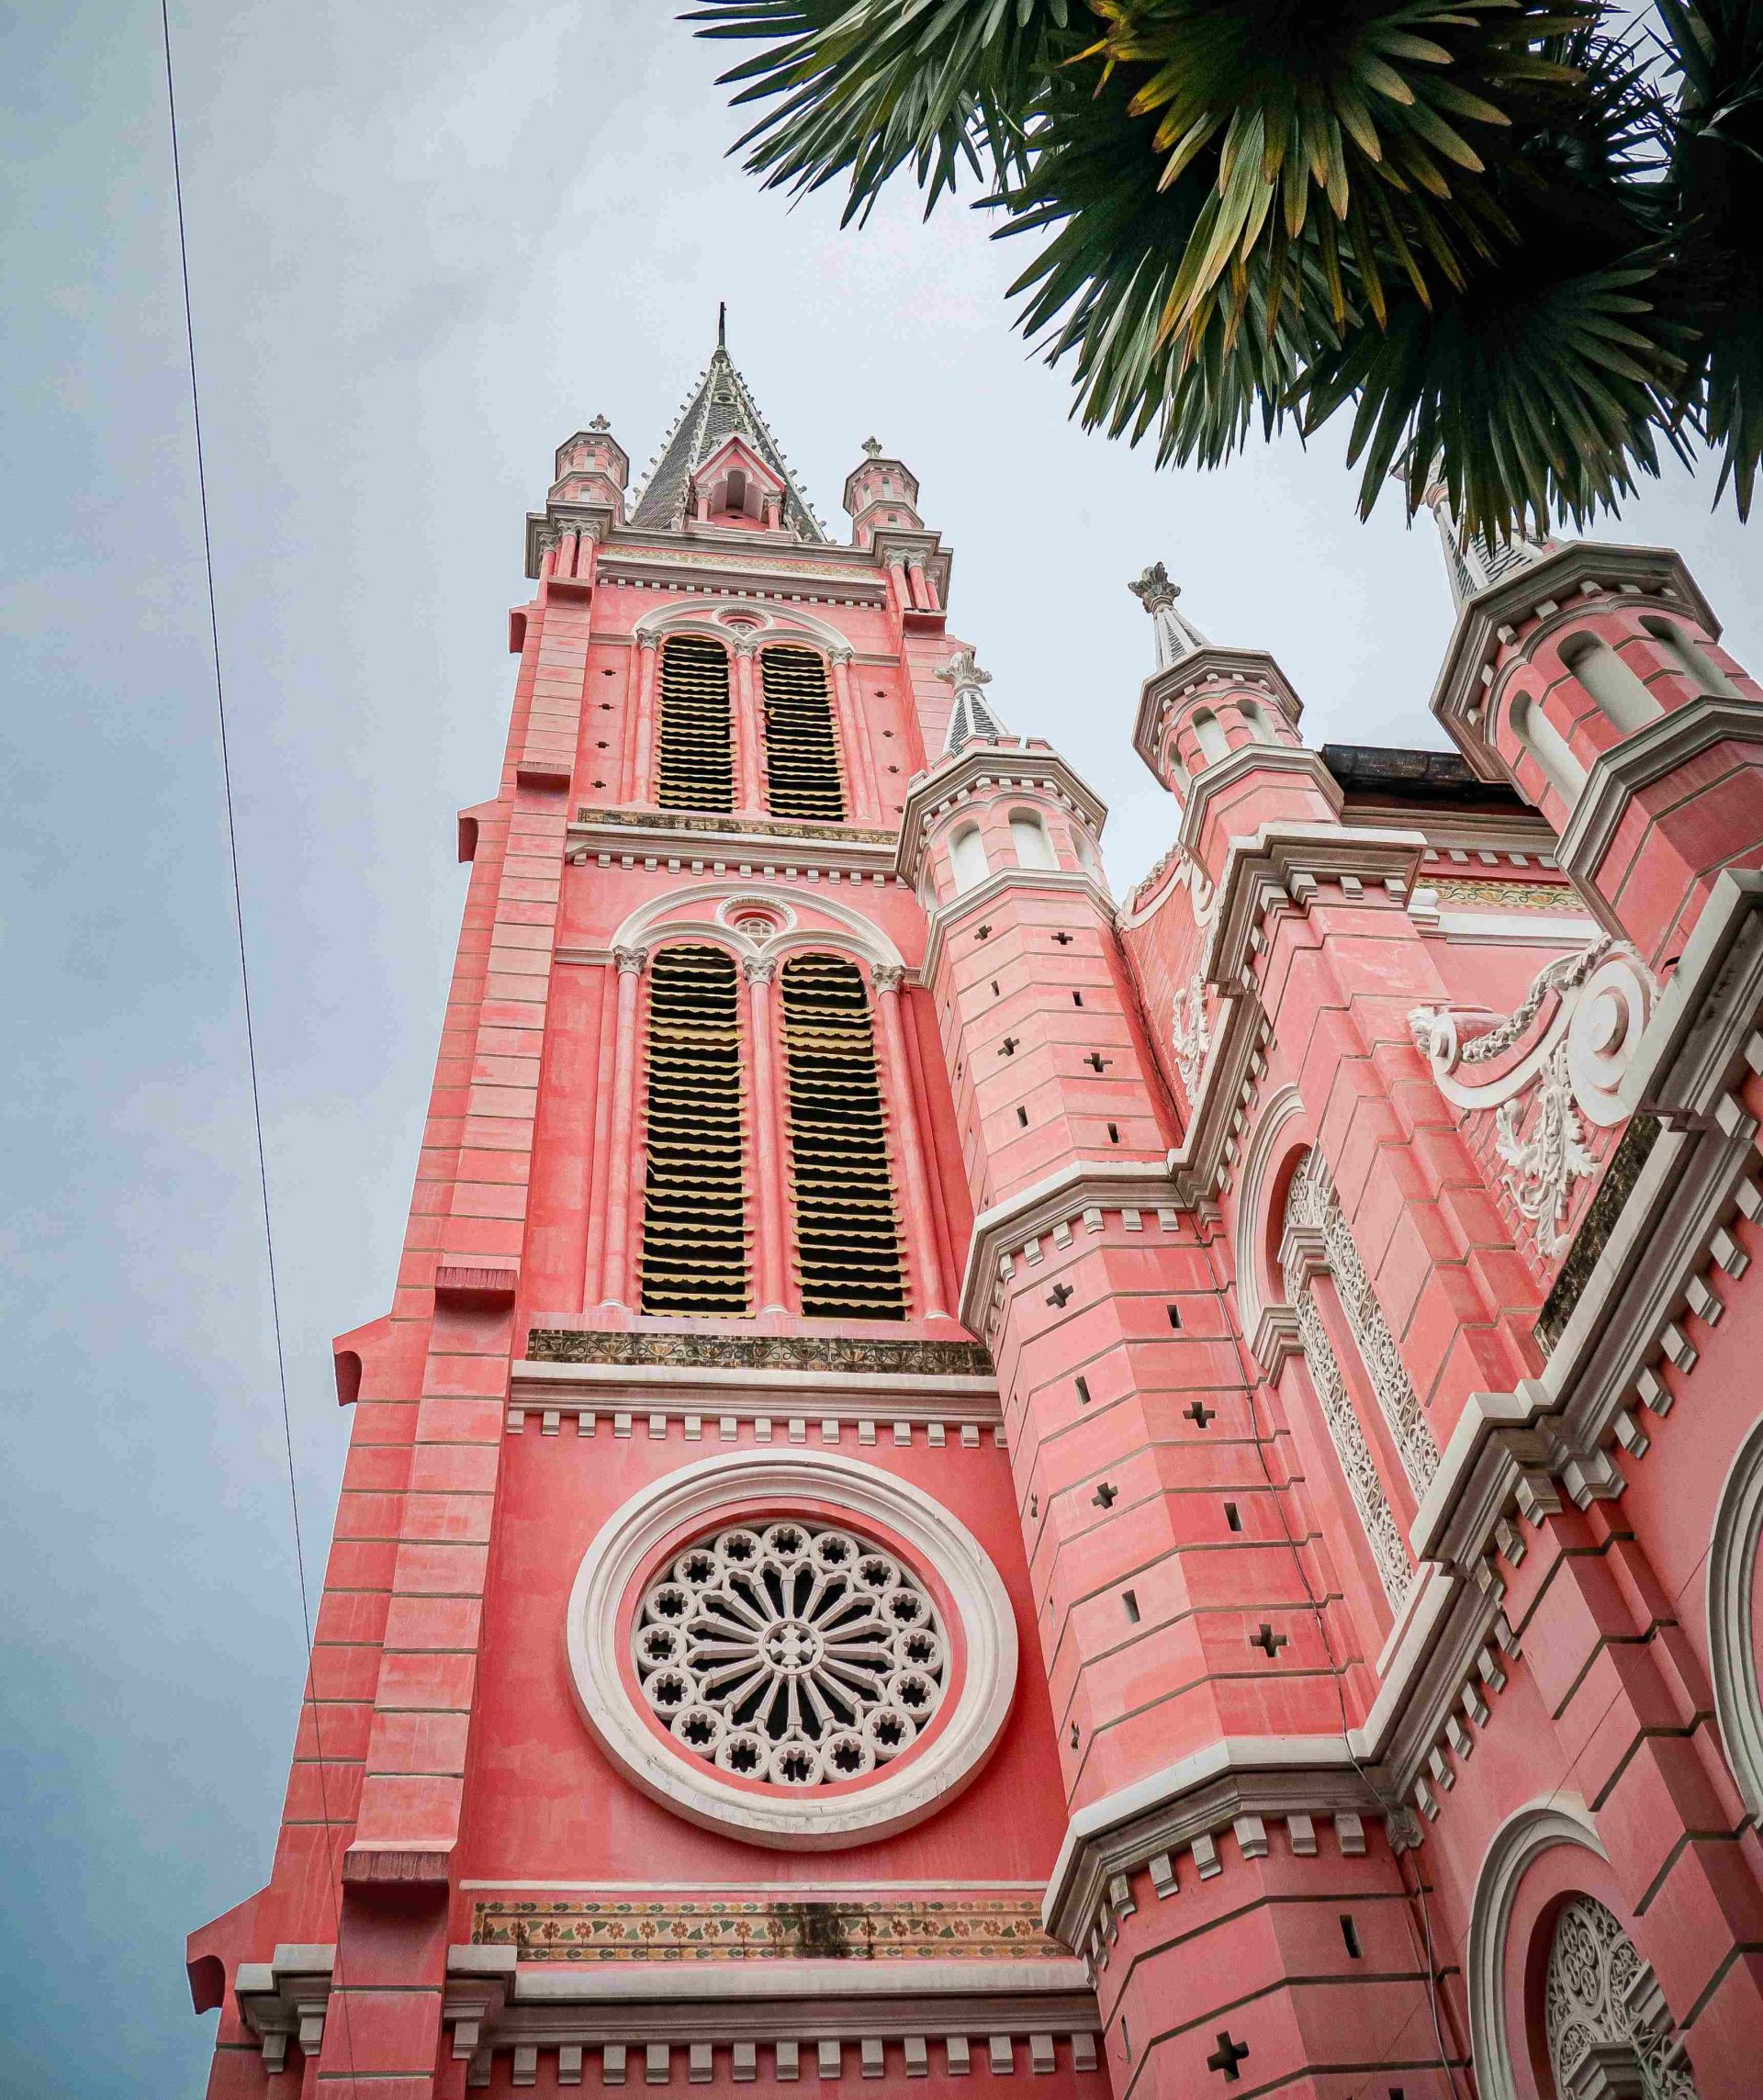 Tan Dinh church (Pink church) - saigonwalks walking tour in hochiminh city 